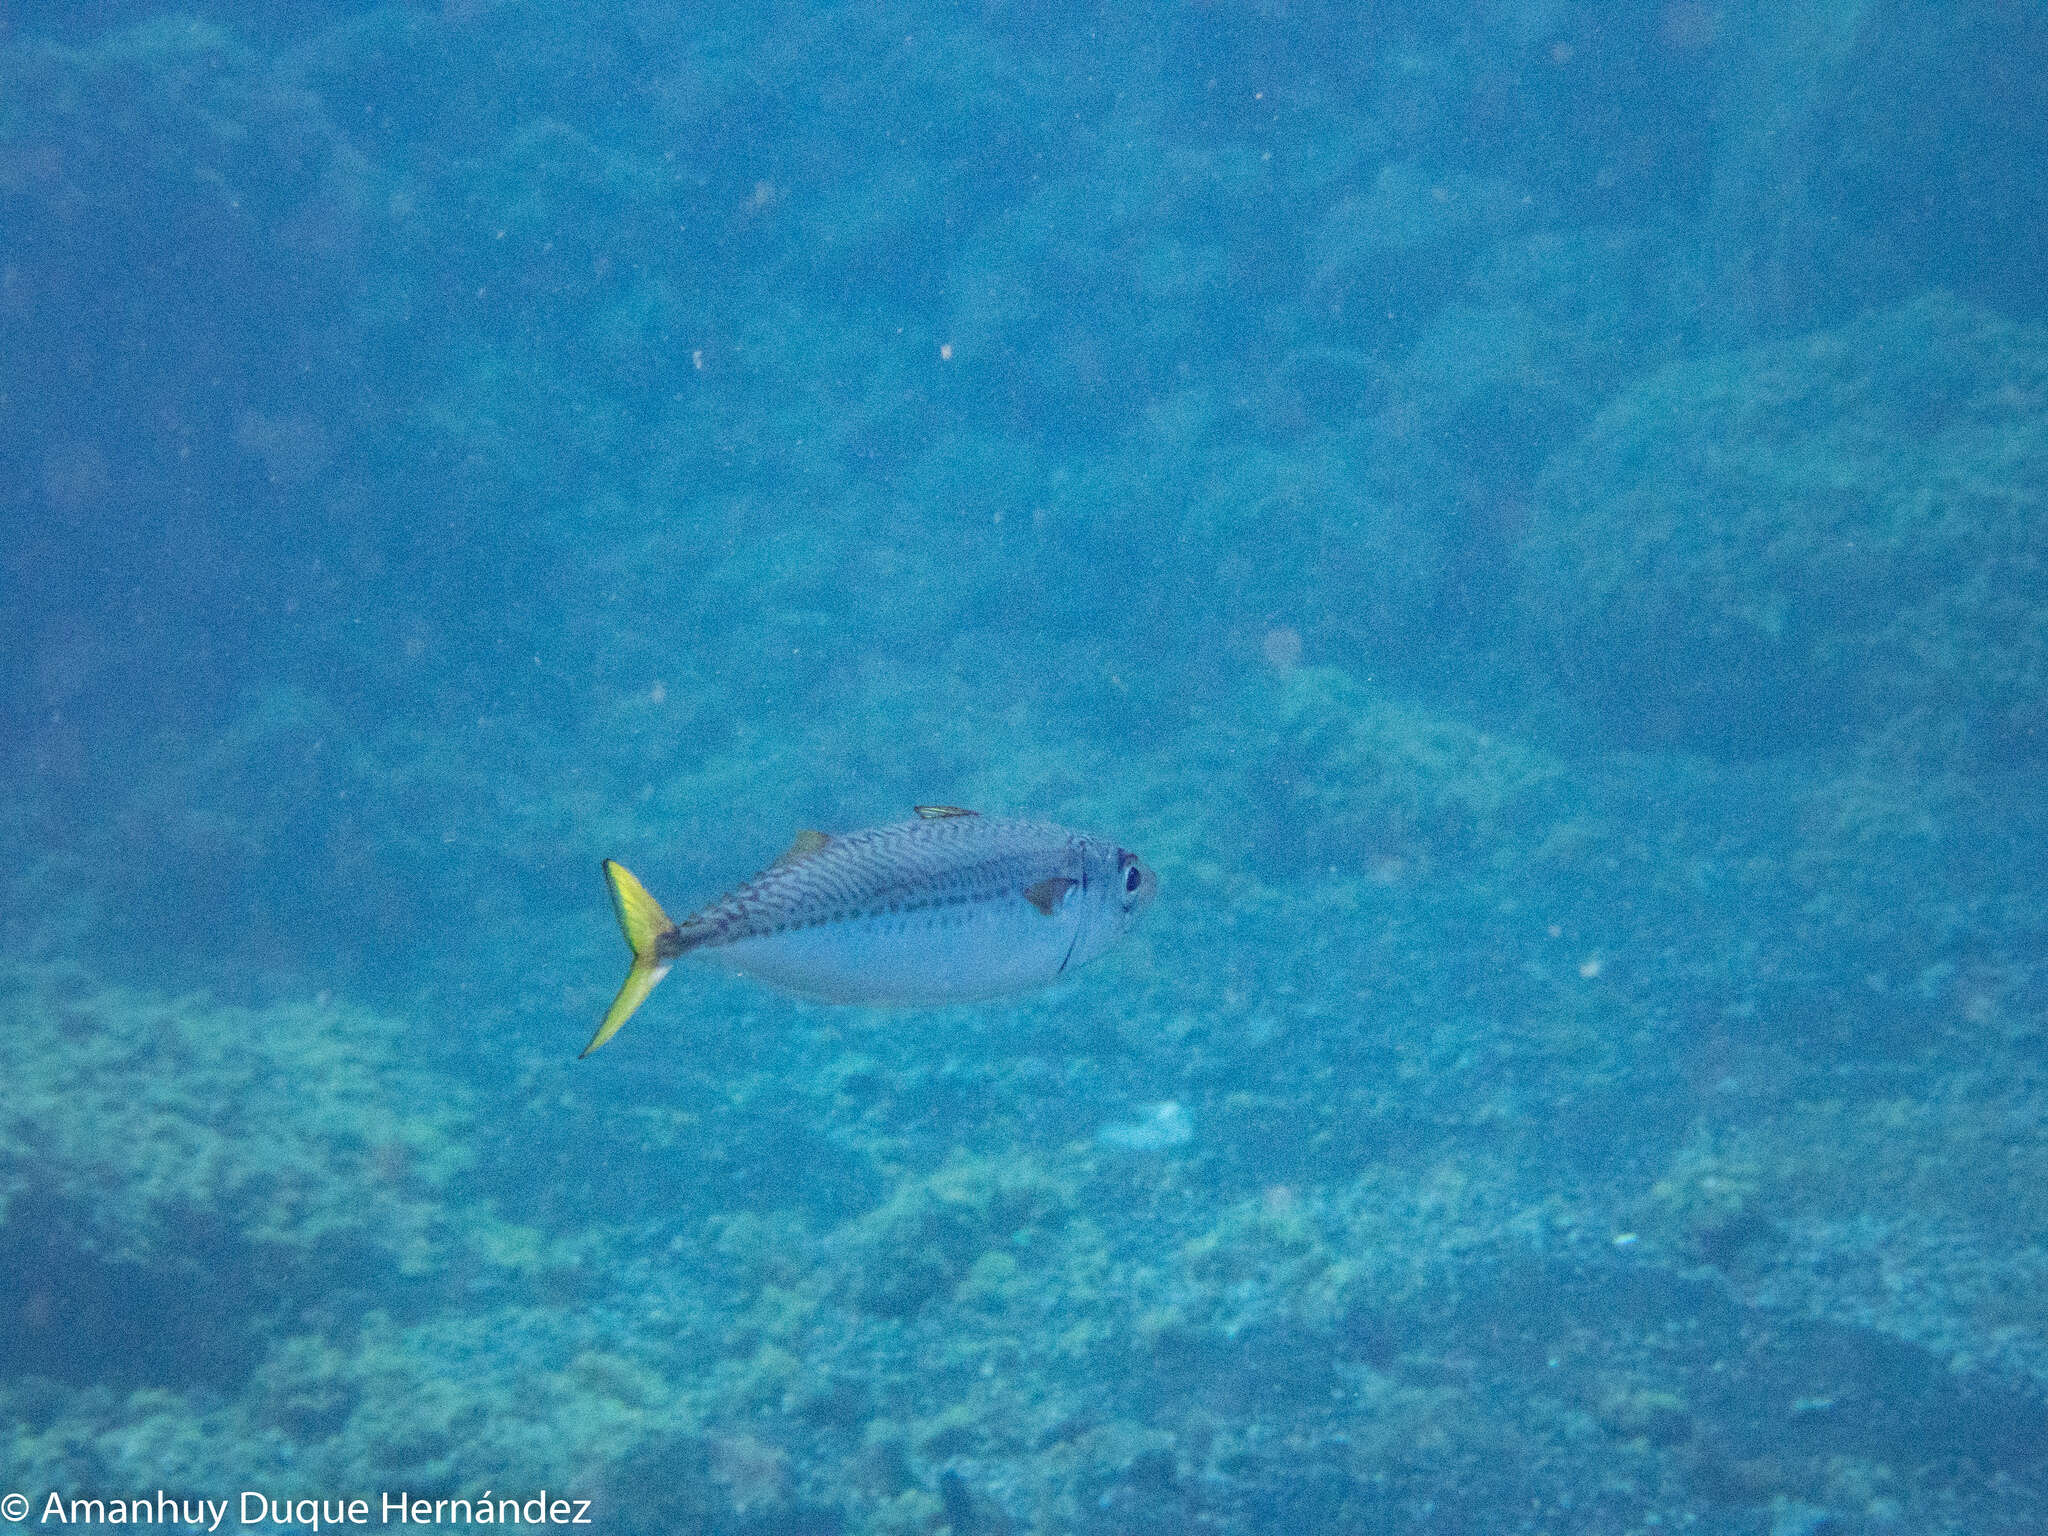 Image of Atlantic Chub Mackerel